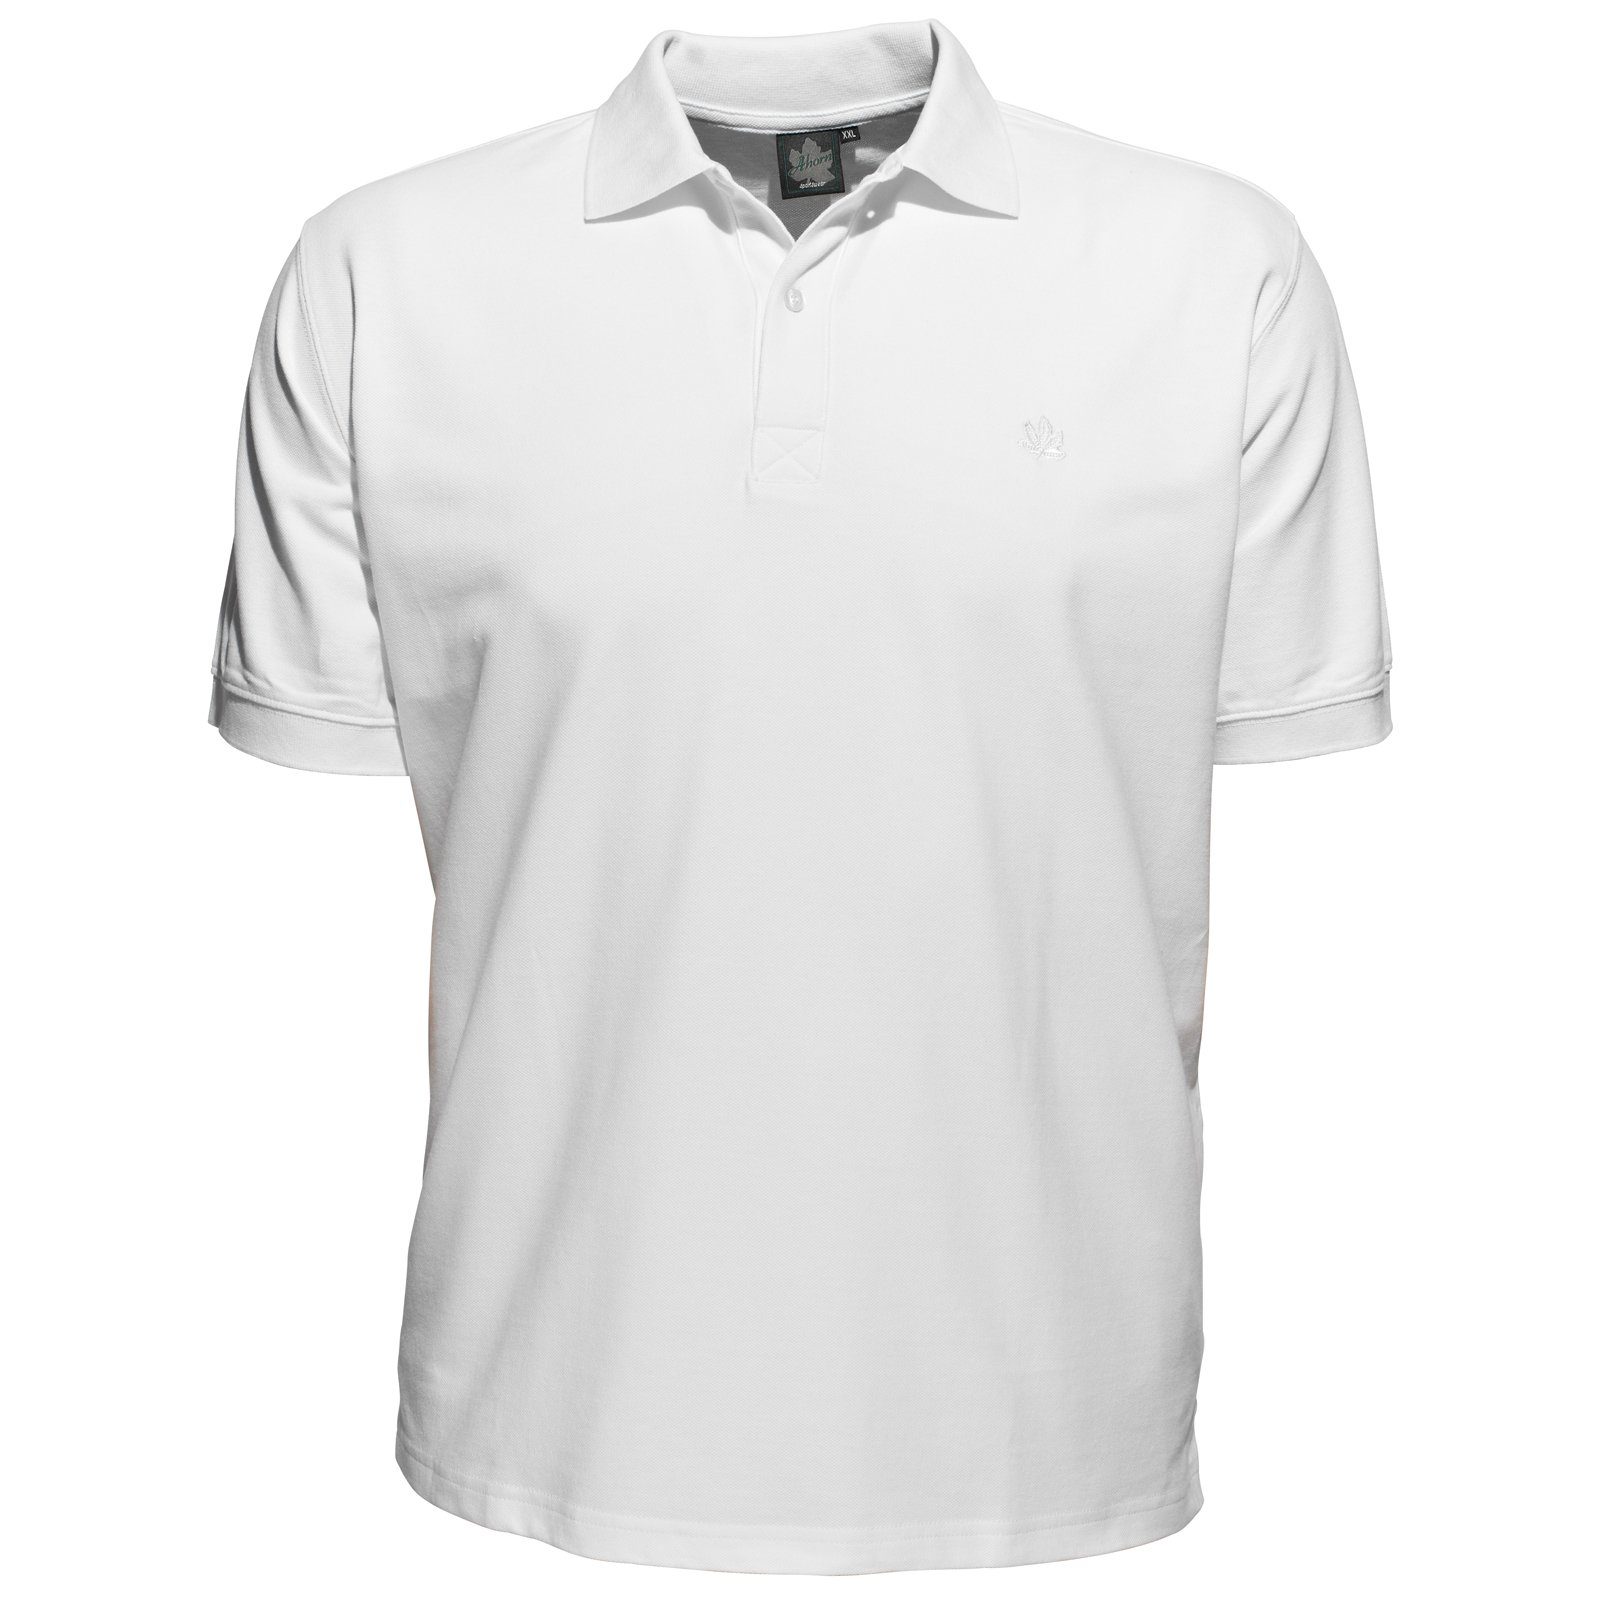 AHORN SPORTSWEAR Poloshirt »Übergrößen Herren Poloshirt weiß Ahorn  Sportswear« online kaufen | OTTO